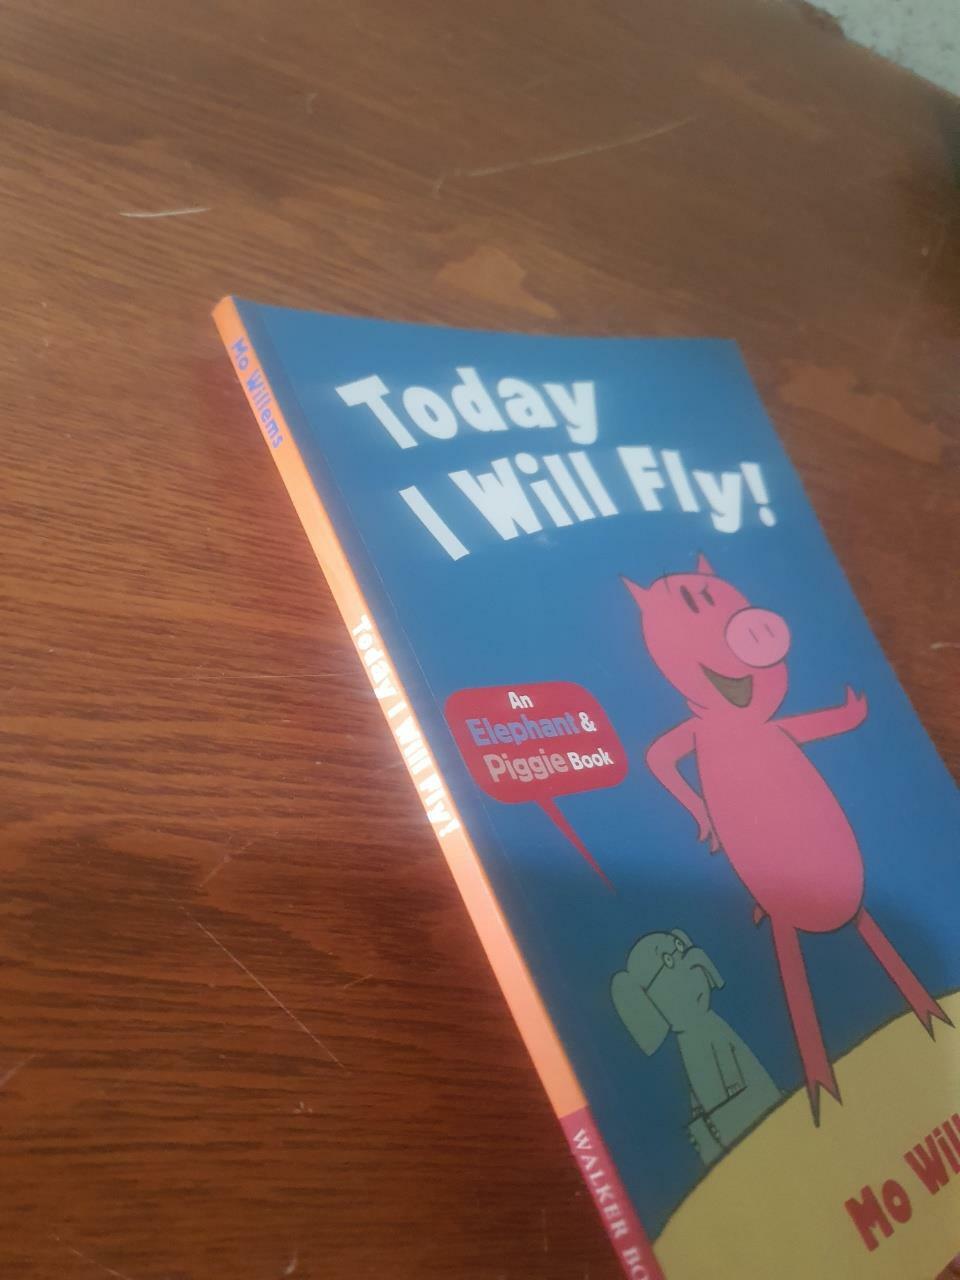 [중고] Today I Will Fly! (Paperback)